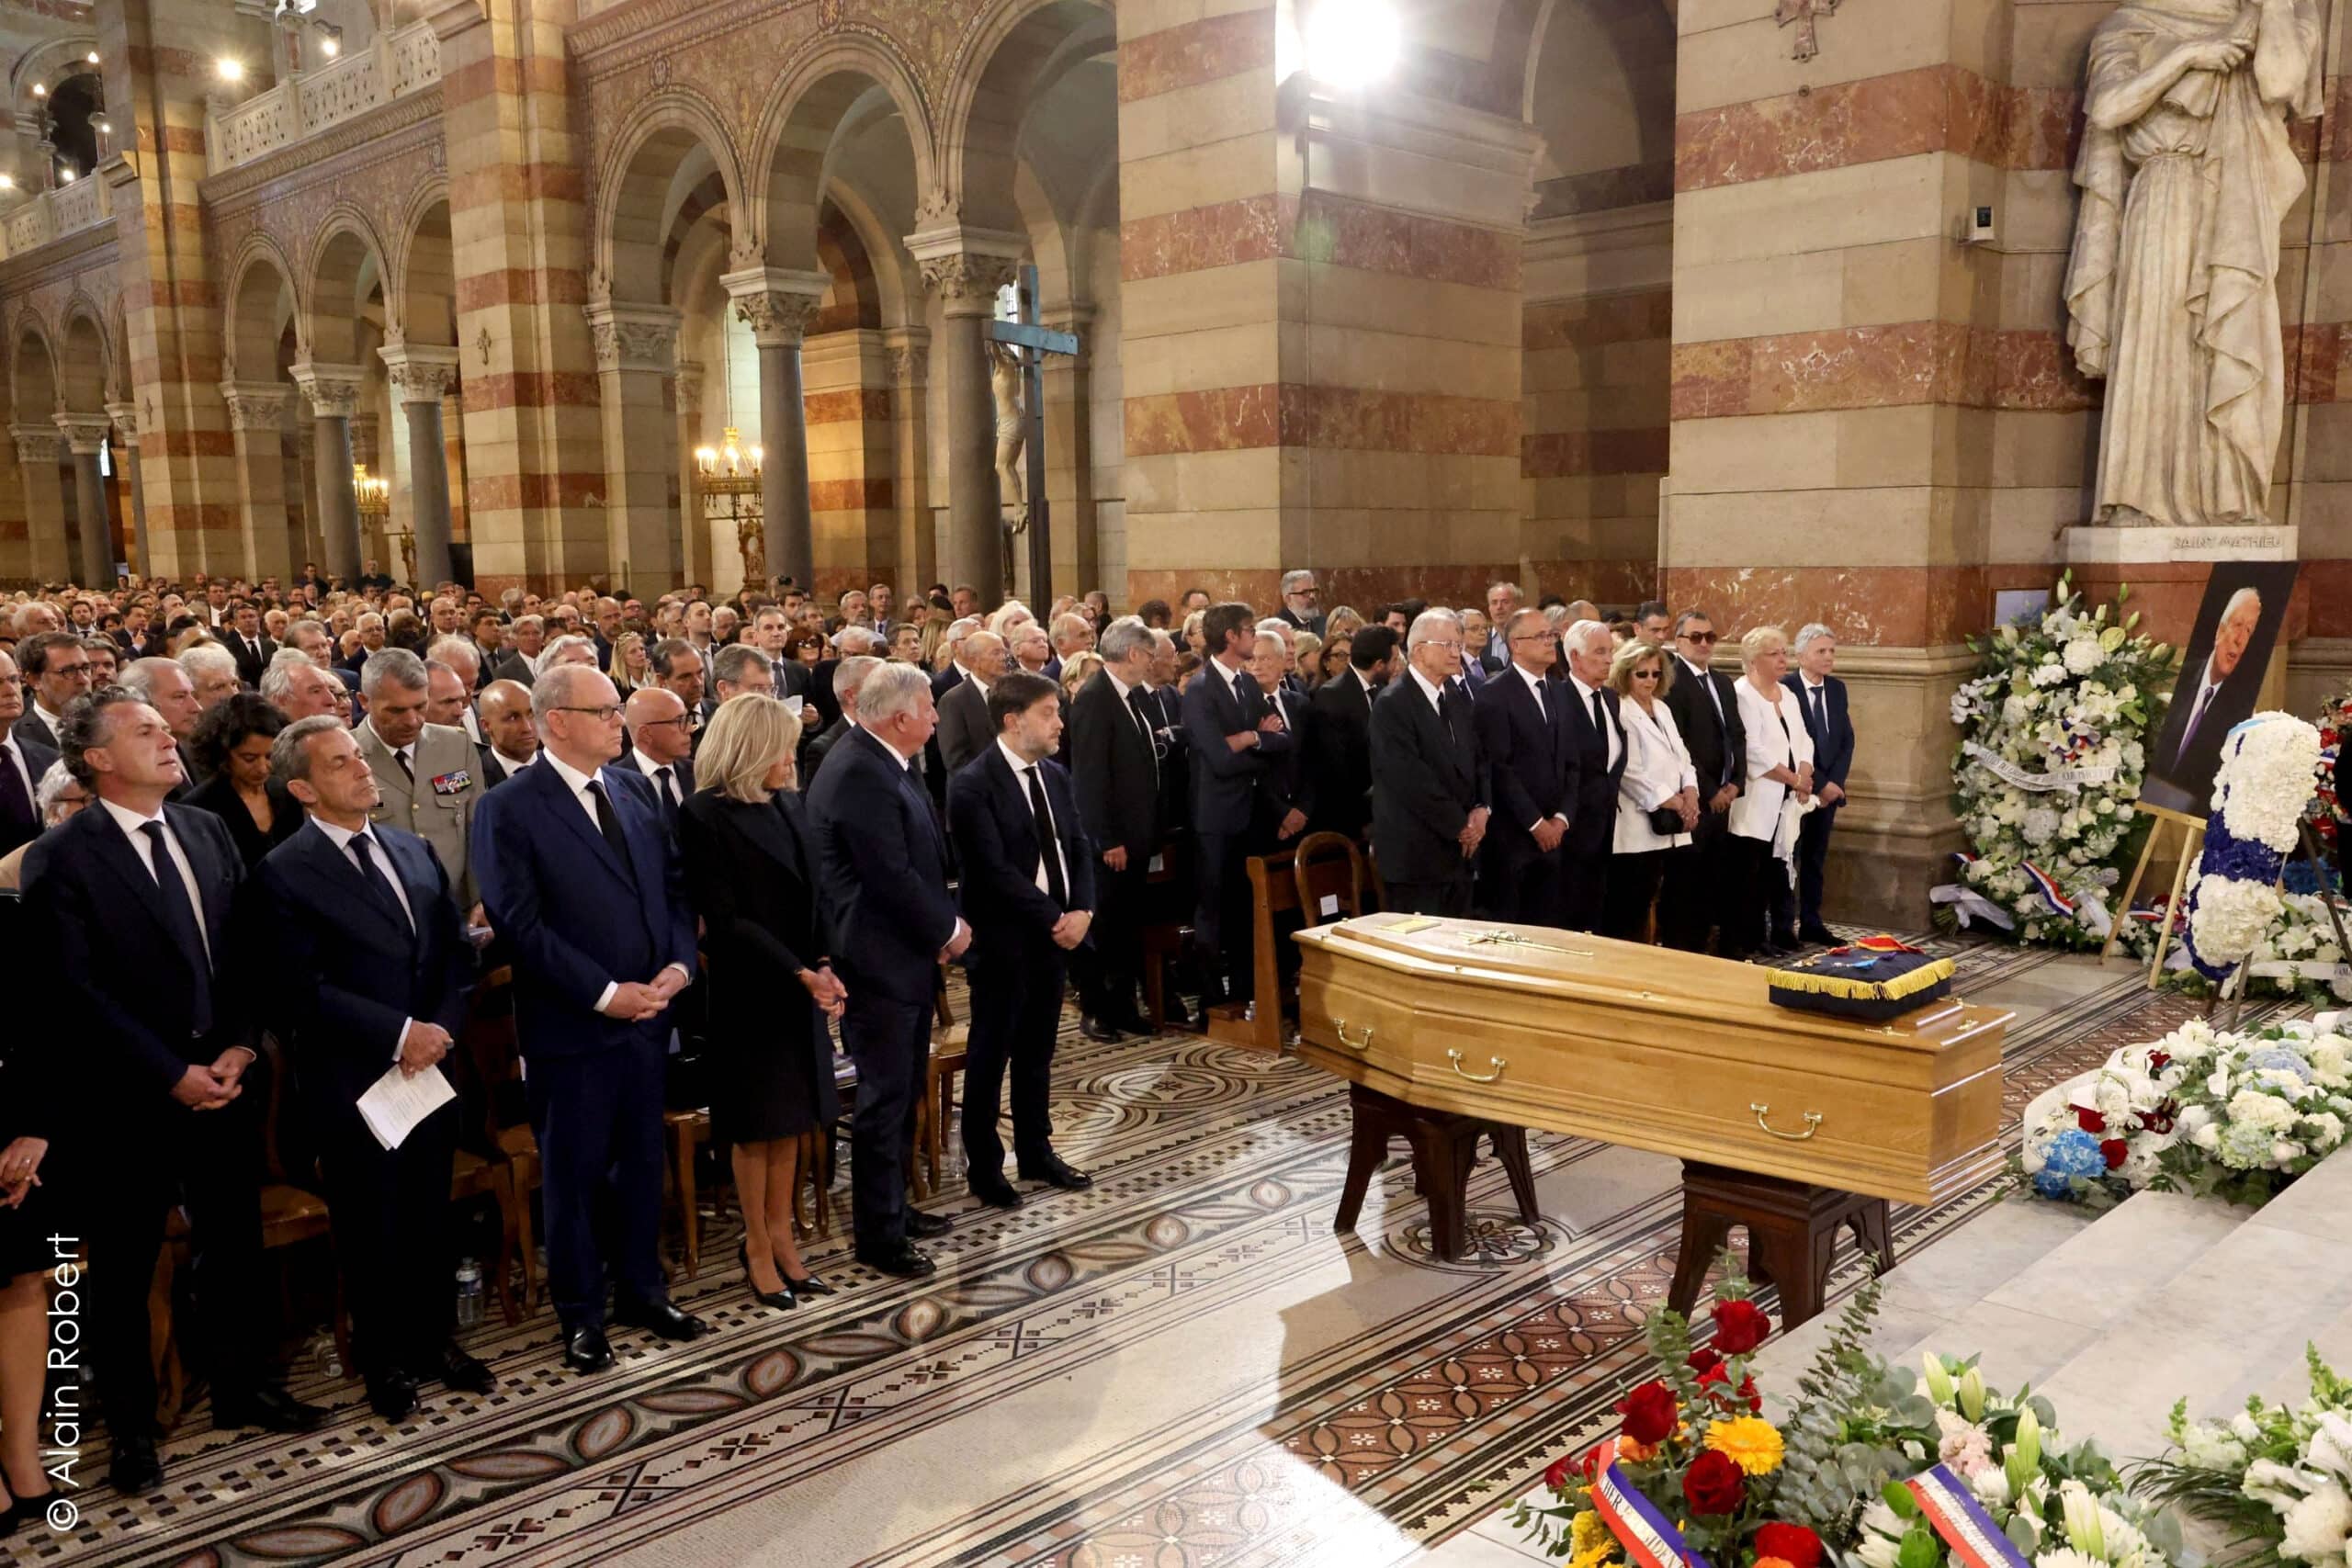 Jean-Claude Gaudin, Les obsèques de Jean-Claude Gaudin célébrées à la Major, Made in Marseille